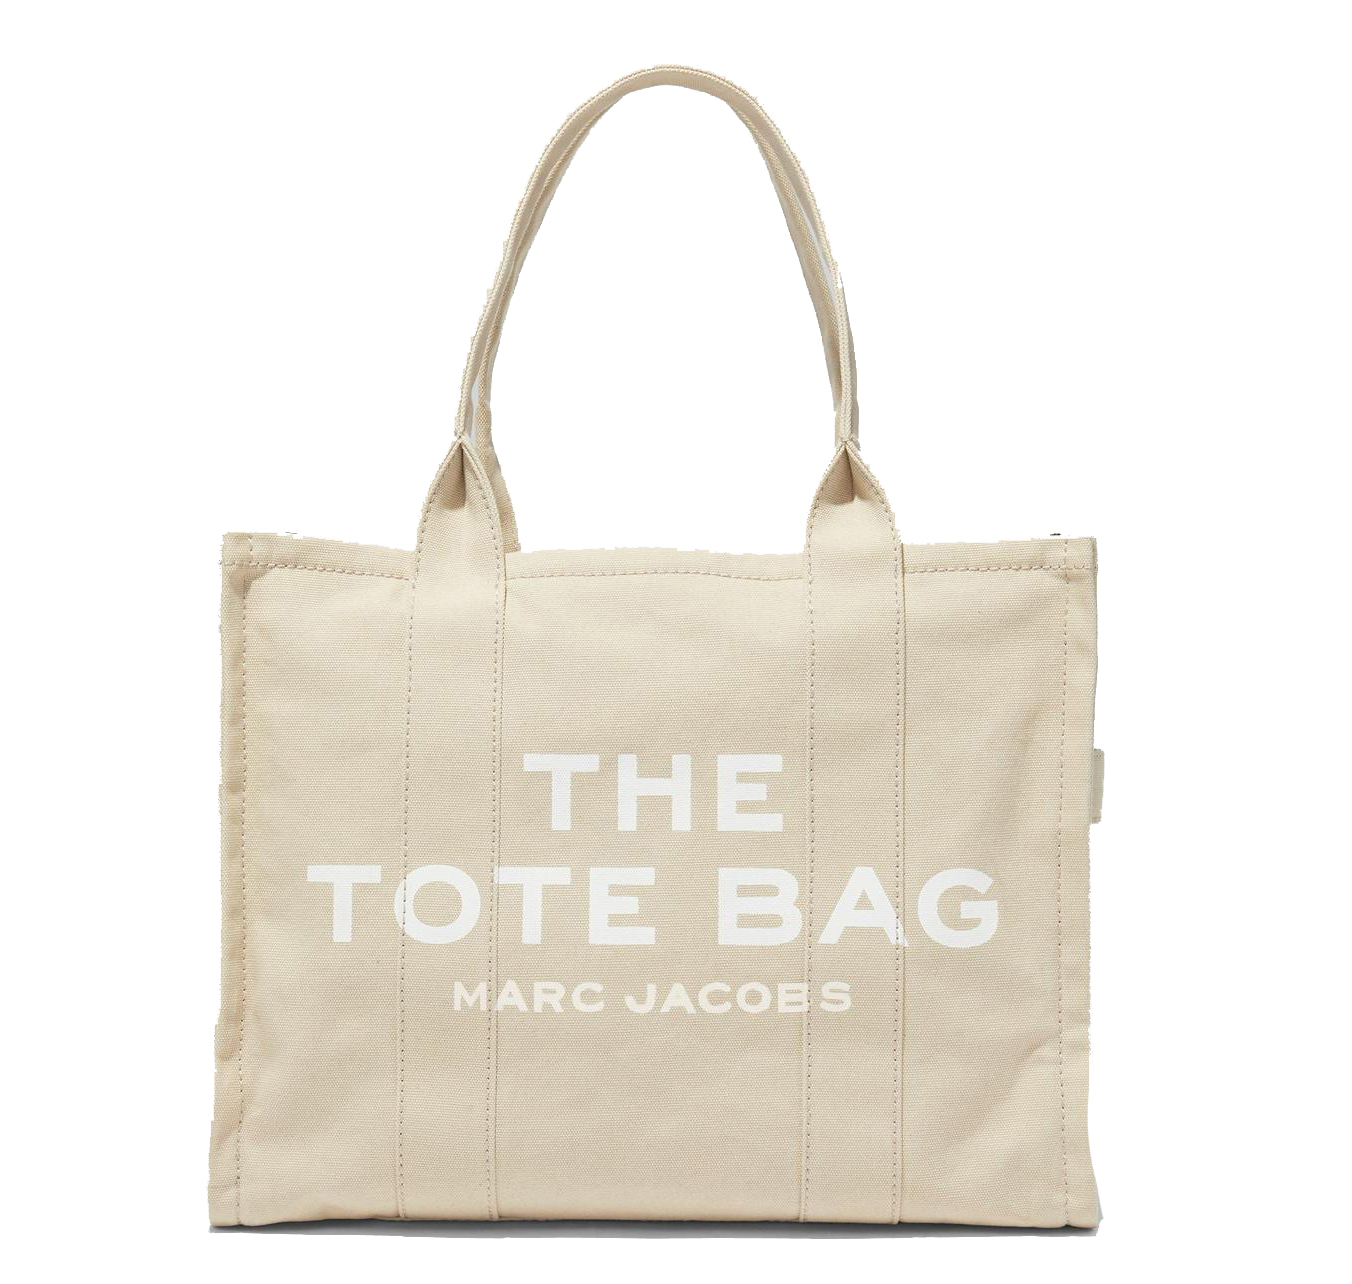 Bolso Marc Jacobs the tote bag grande beige - 275.00 € Bolsos y zapatos de mujer, marcas de moda online, Michael kors, Karl lagerfeld, Guess, Premiata y muchas marcas más